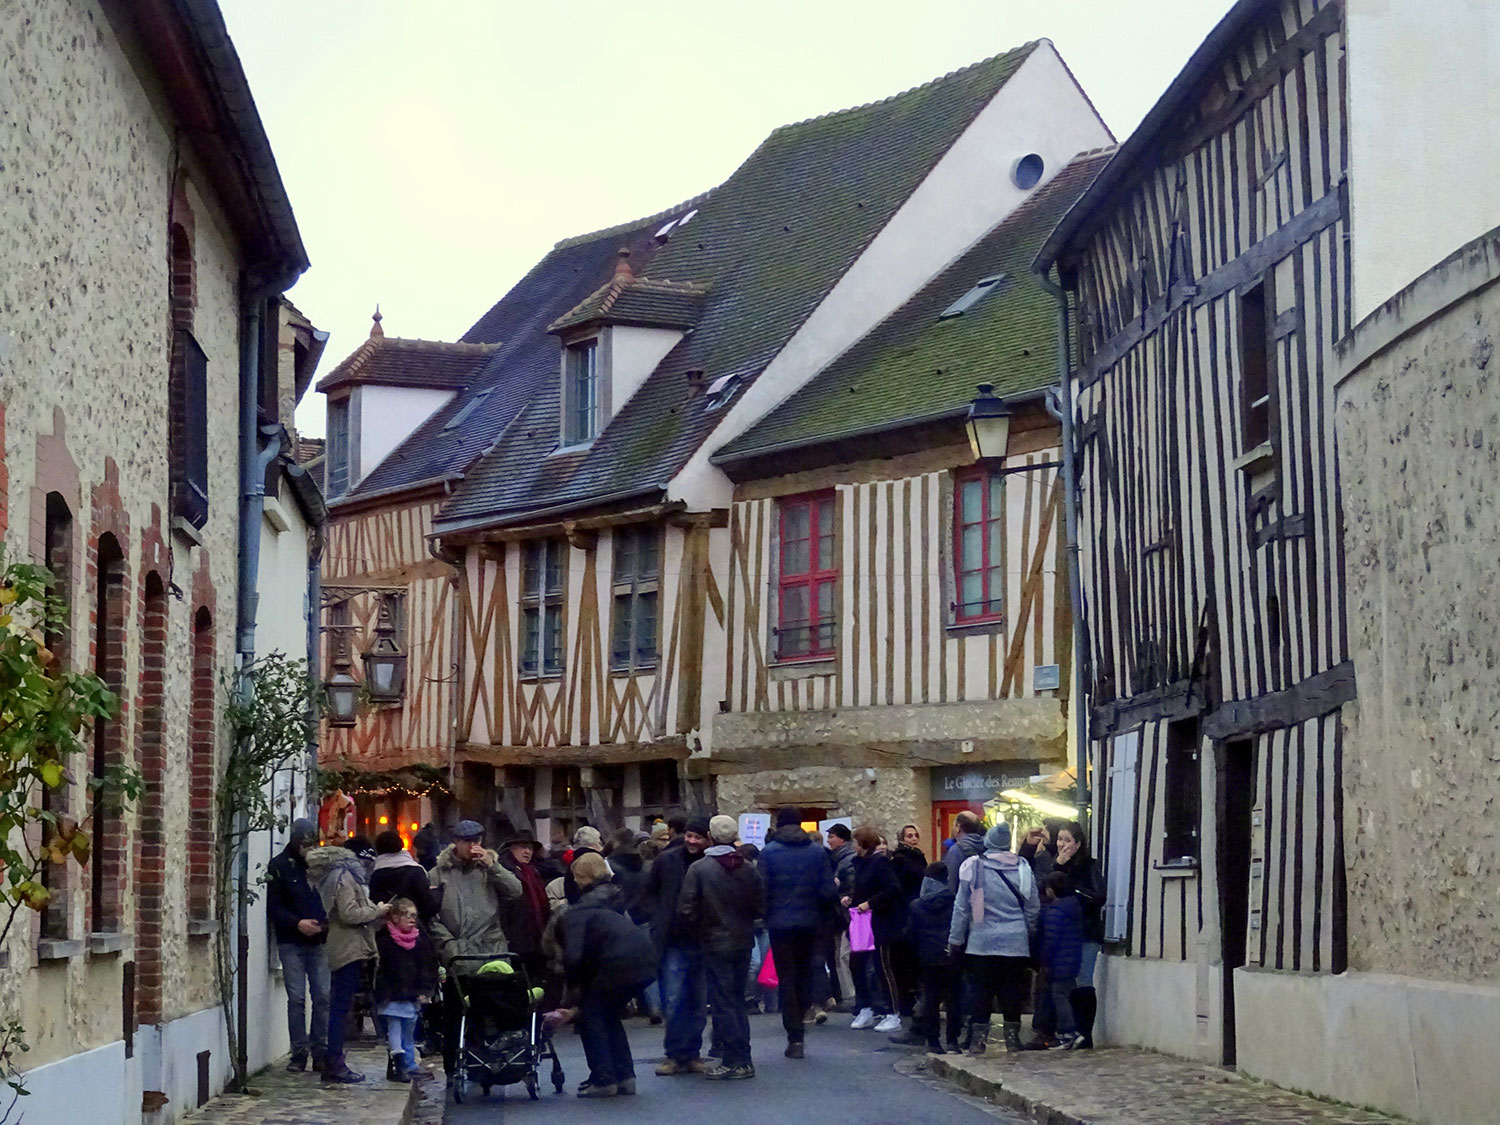 Mercado de Natal Medieval